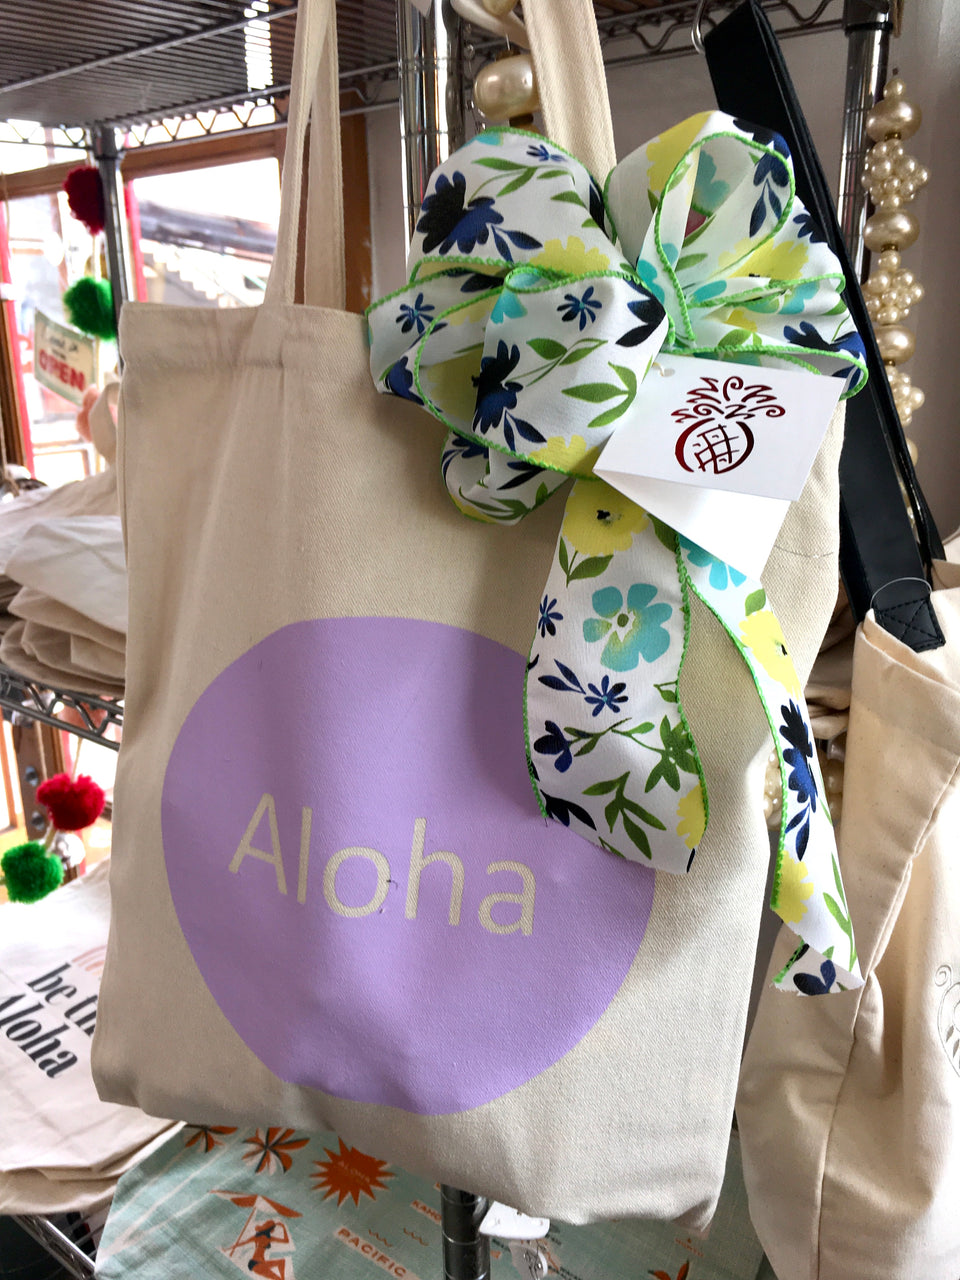 Aloha Tote - Includes free delivery on Oahu basket